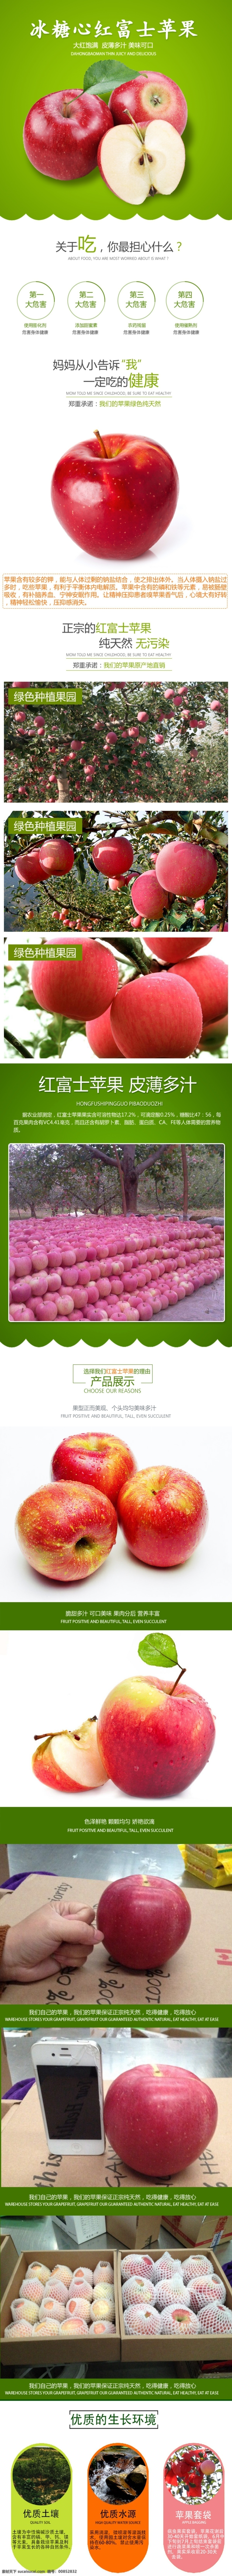 红富士 苹果 详情 页 淘宝 苹果水果 白色